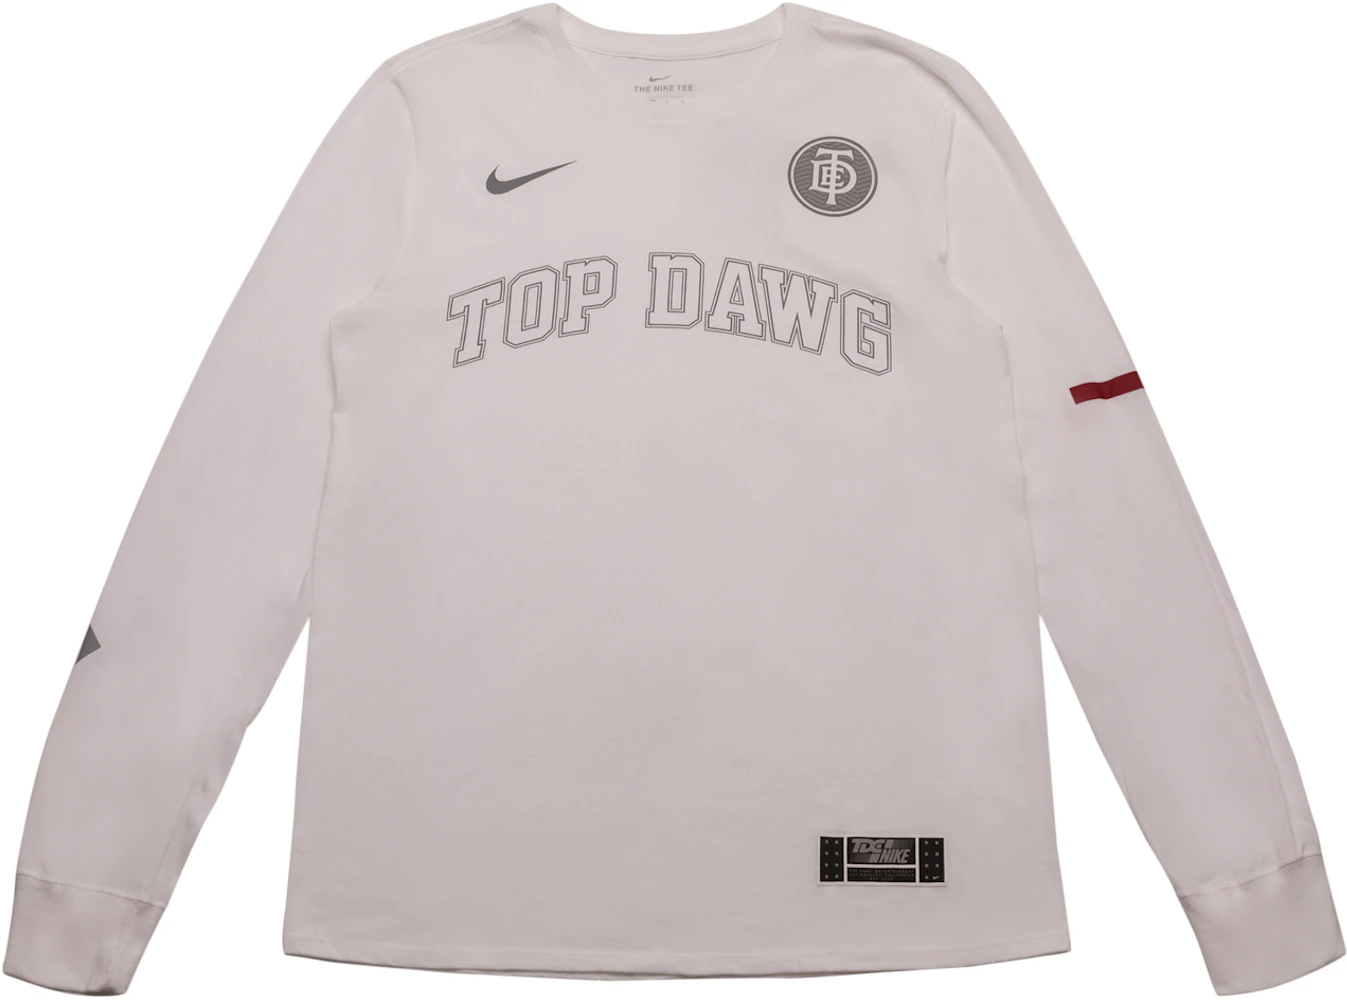 acuerdo pompa Tranquilidad de espíritu TDE x Nike Top Dawg Arc Long Sleeve TDE White - SS18 - ES